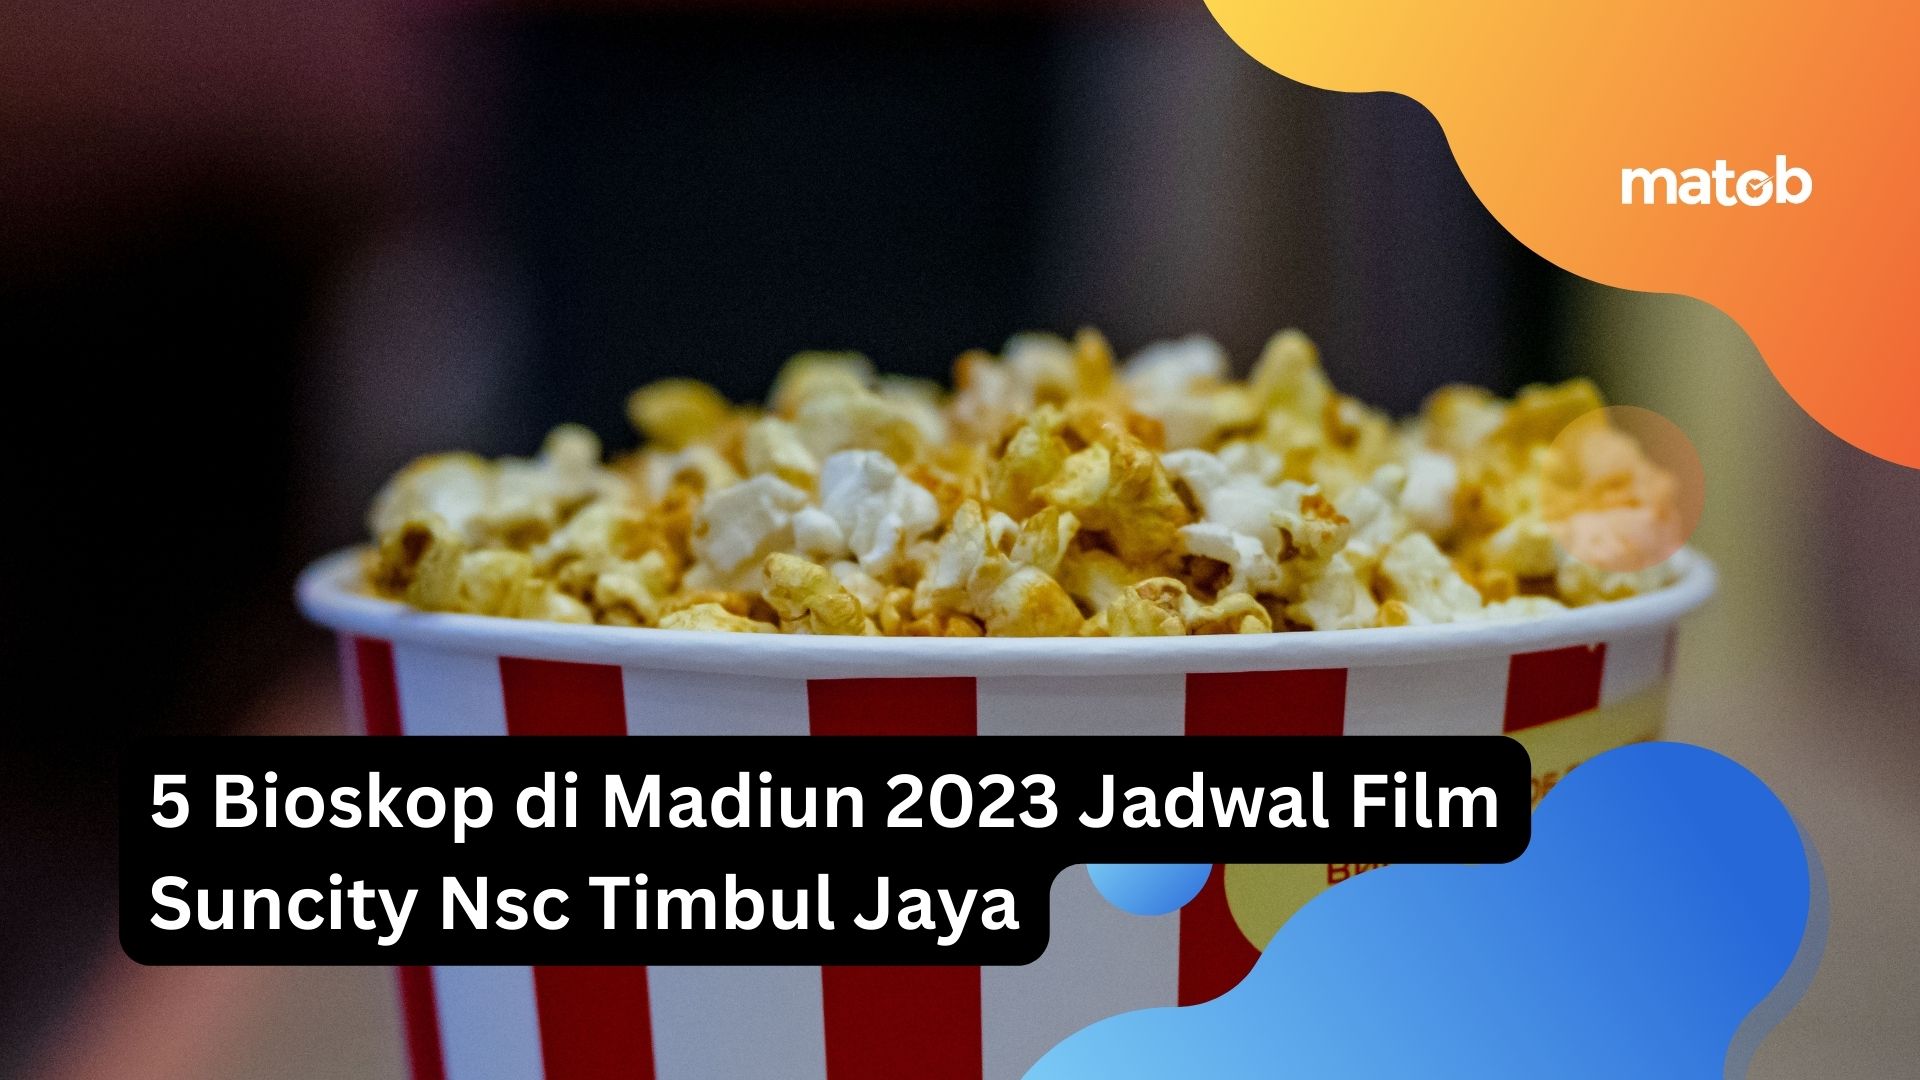 5 Bioskop di Madiun 2023 Jadwal Film Suncity Nsc Timbul Jaya